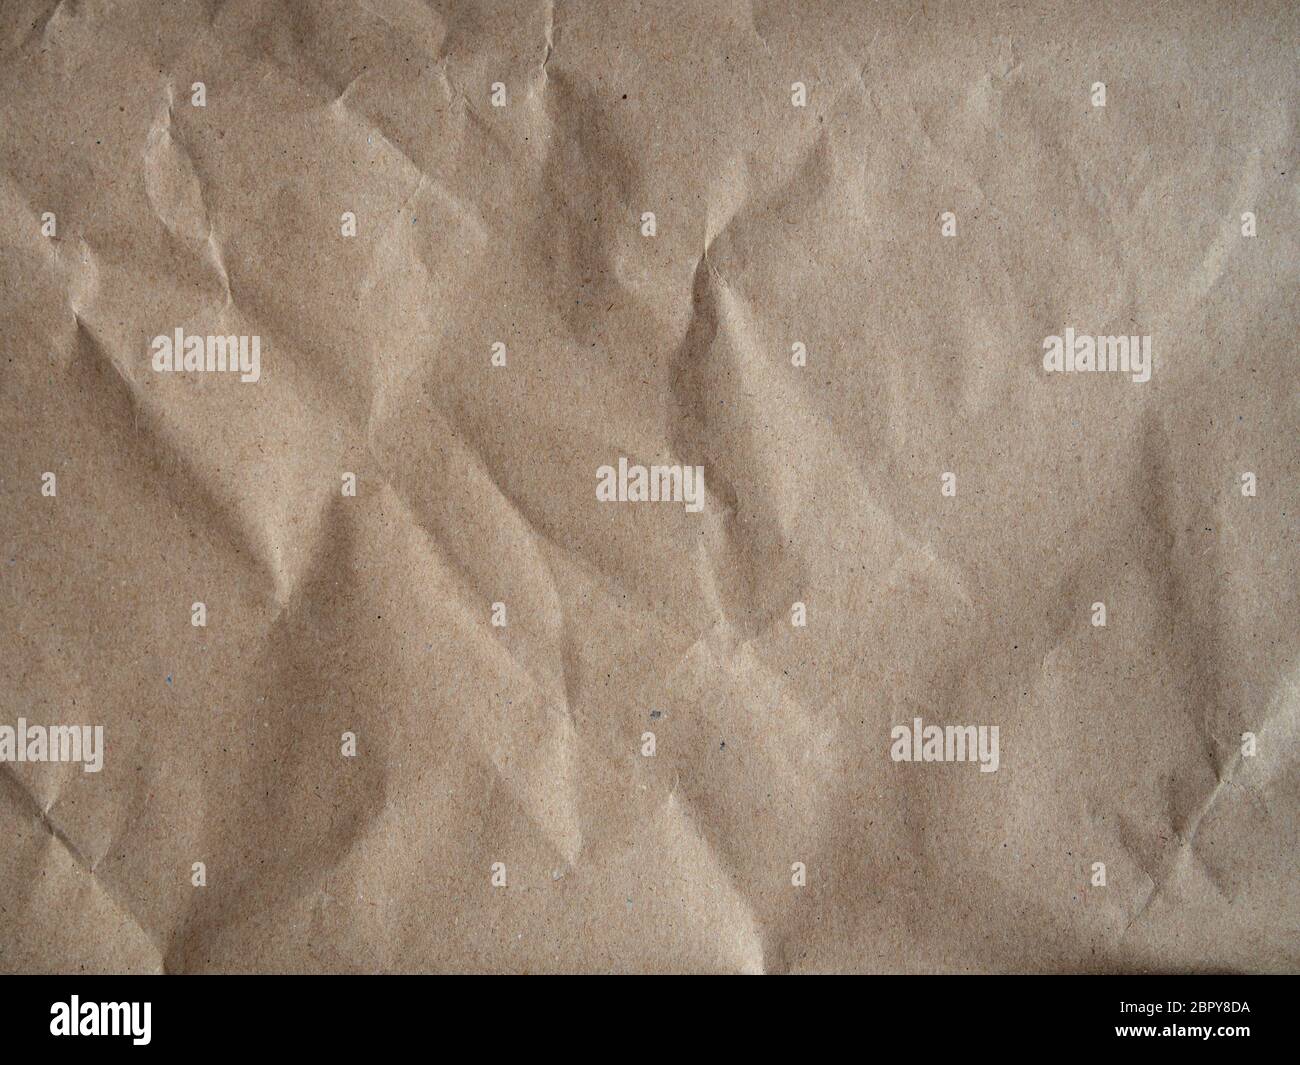 trama di carta artigianale bruna e crumpled, vecchia superficie di carta per sfondo Foto Stock